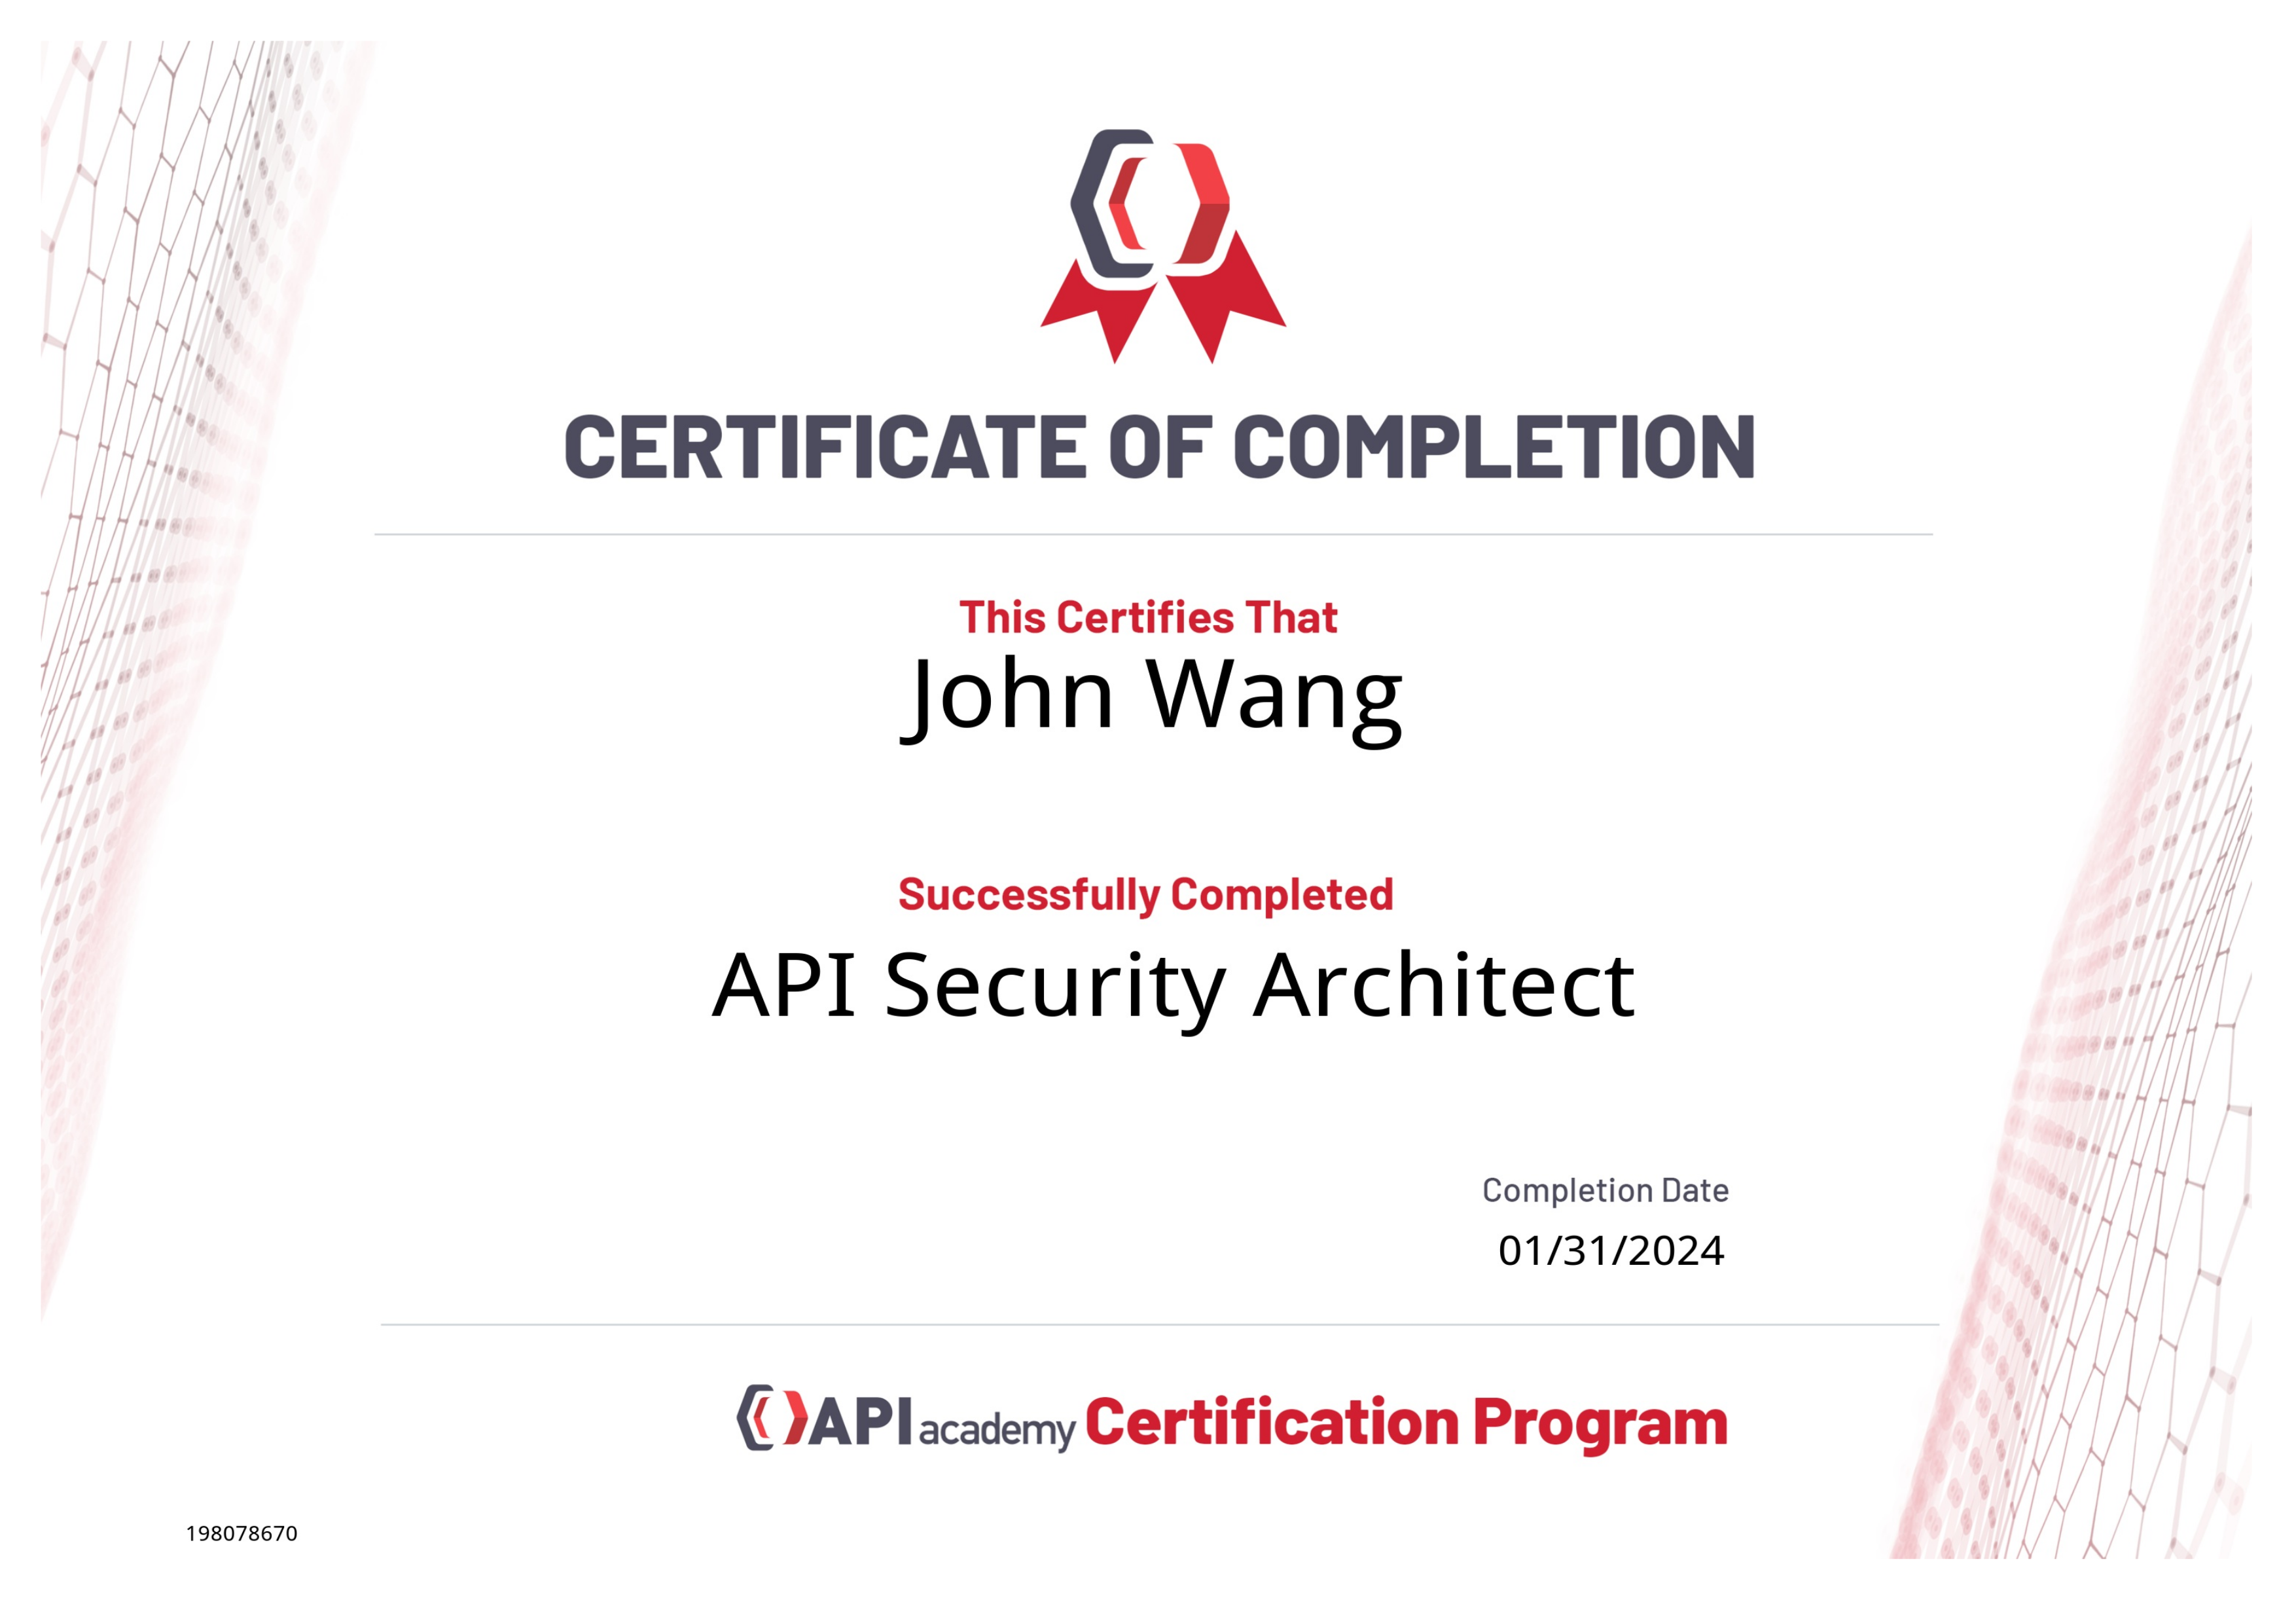 John's API Security Architect from API Academy